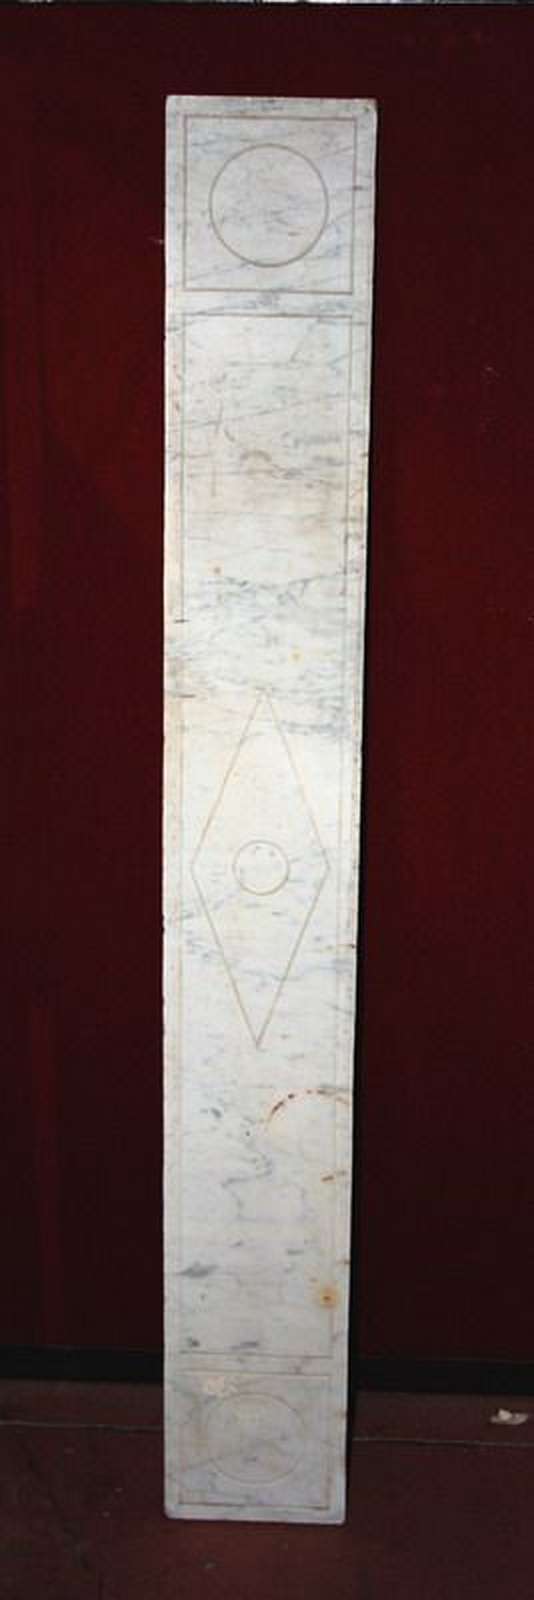 Pannello antico in marmo - Elementi Architettonici - Architettura - Prodotti - Antichità Fiorillo